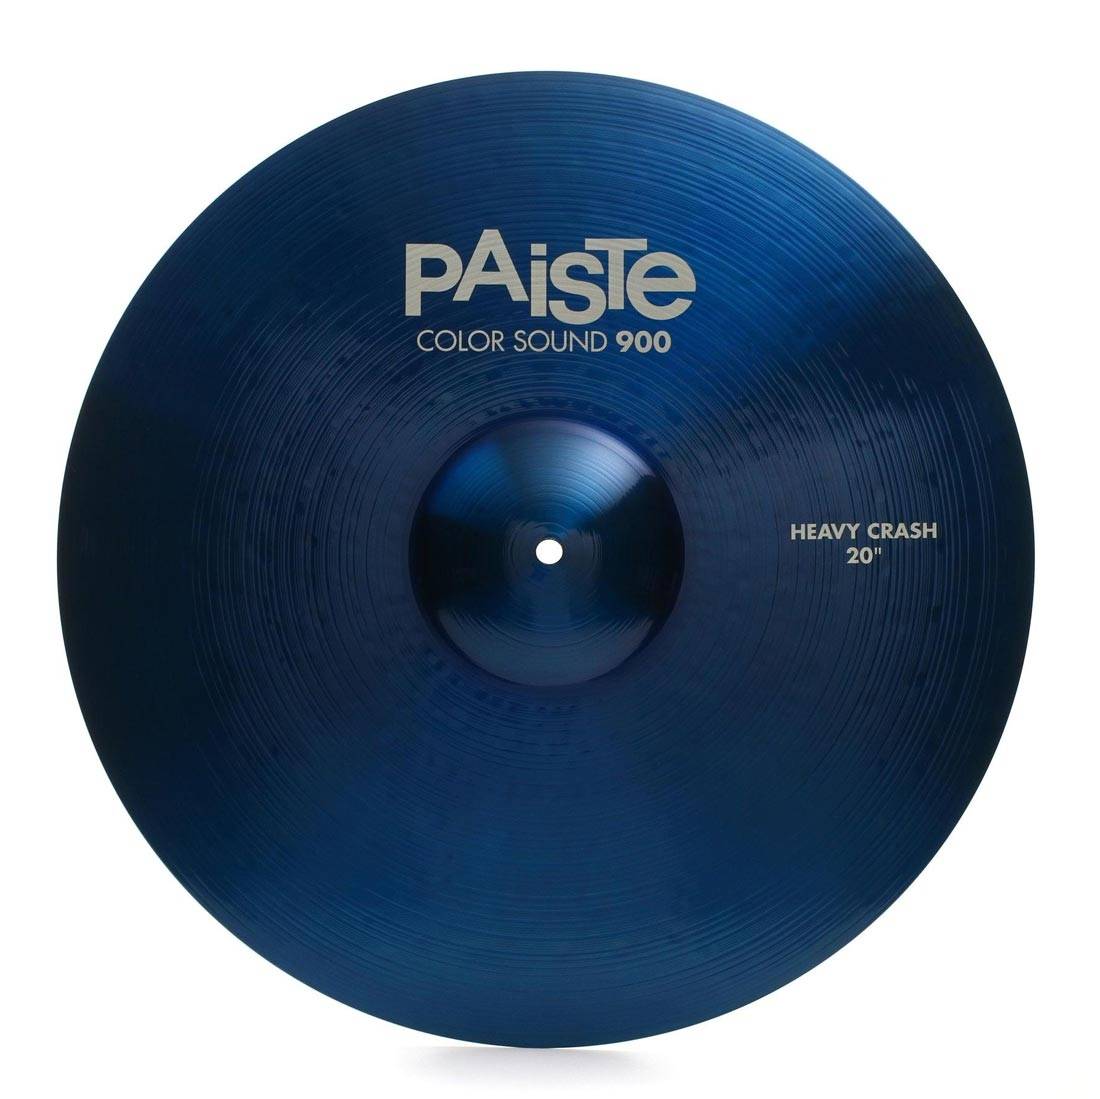 PAISTE 900 Color Sound 20'' Blue Heavy Crash Cymbal